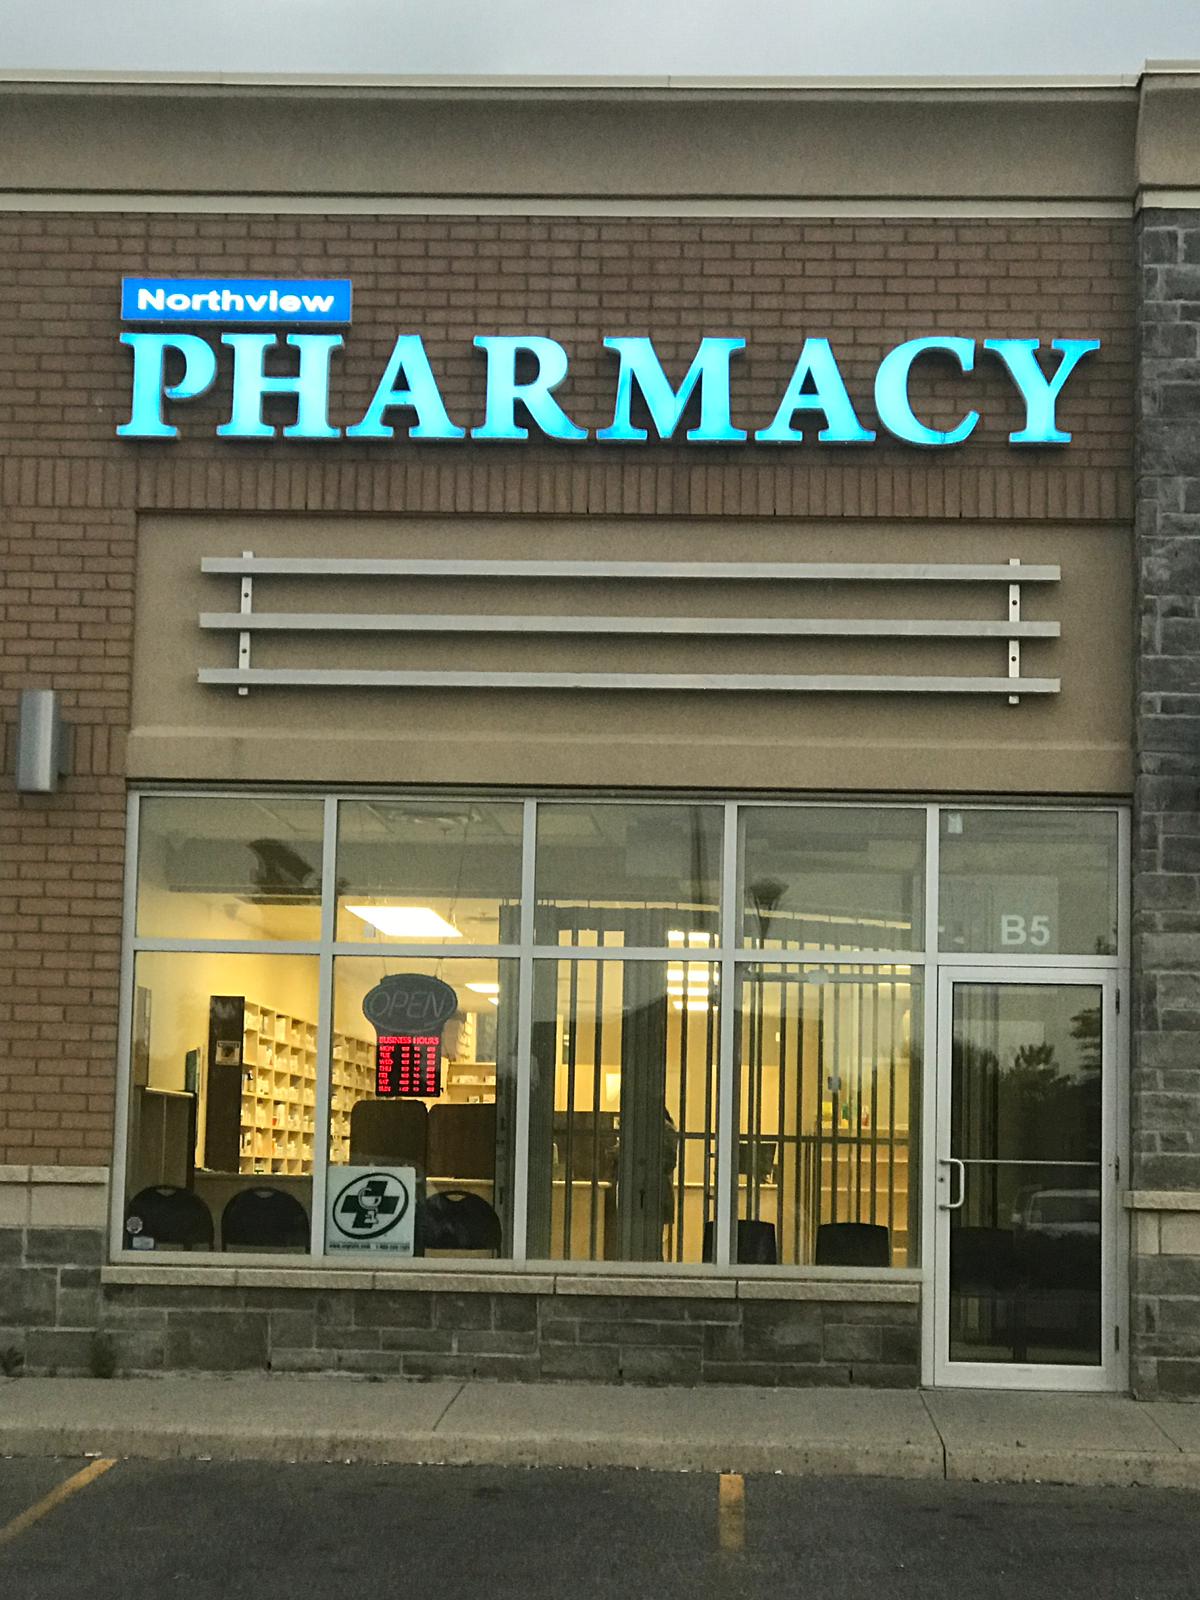 Northview pharmacy